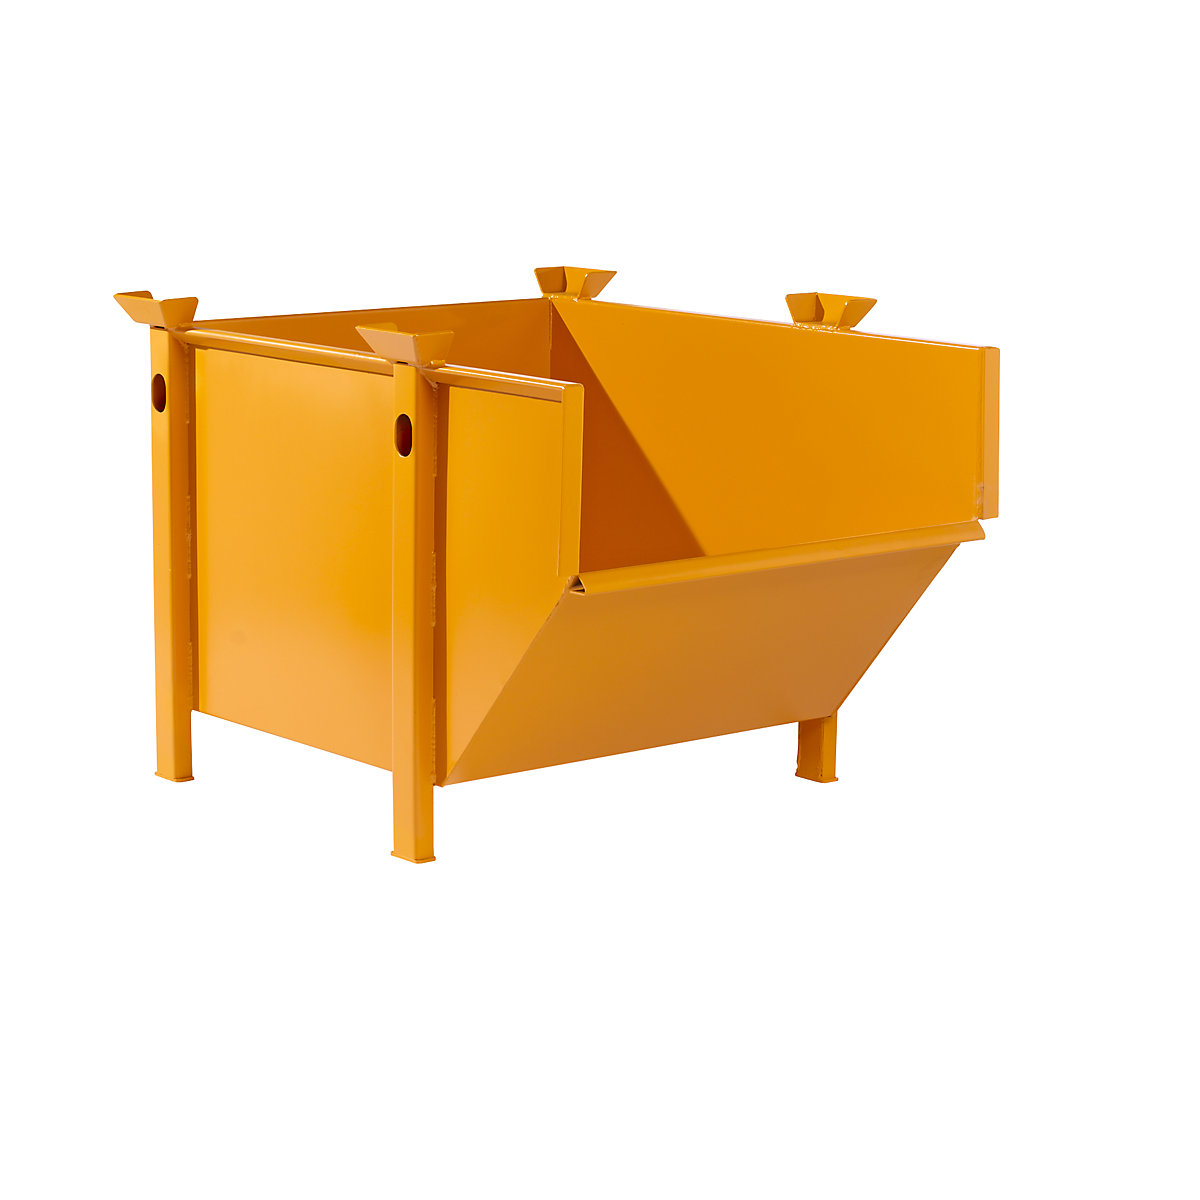 Conteneur en tôle d'acier – eurokraft pro, capacité 0,5 m³, sans trappe rabattable, orange jaune-7